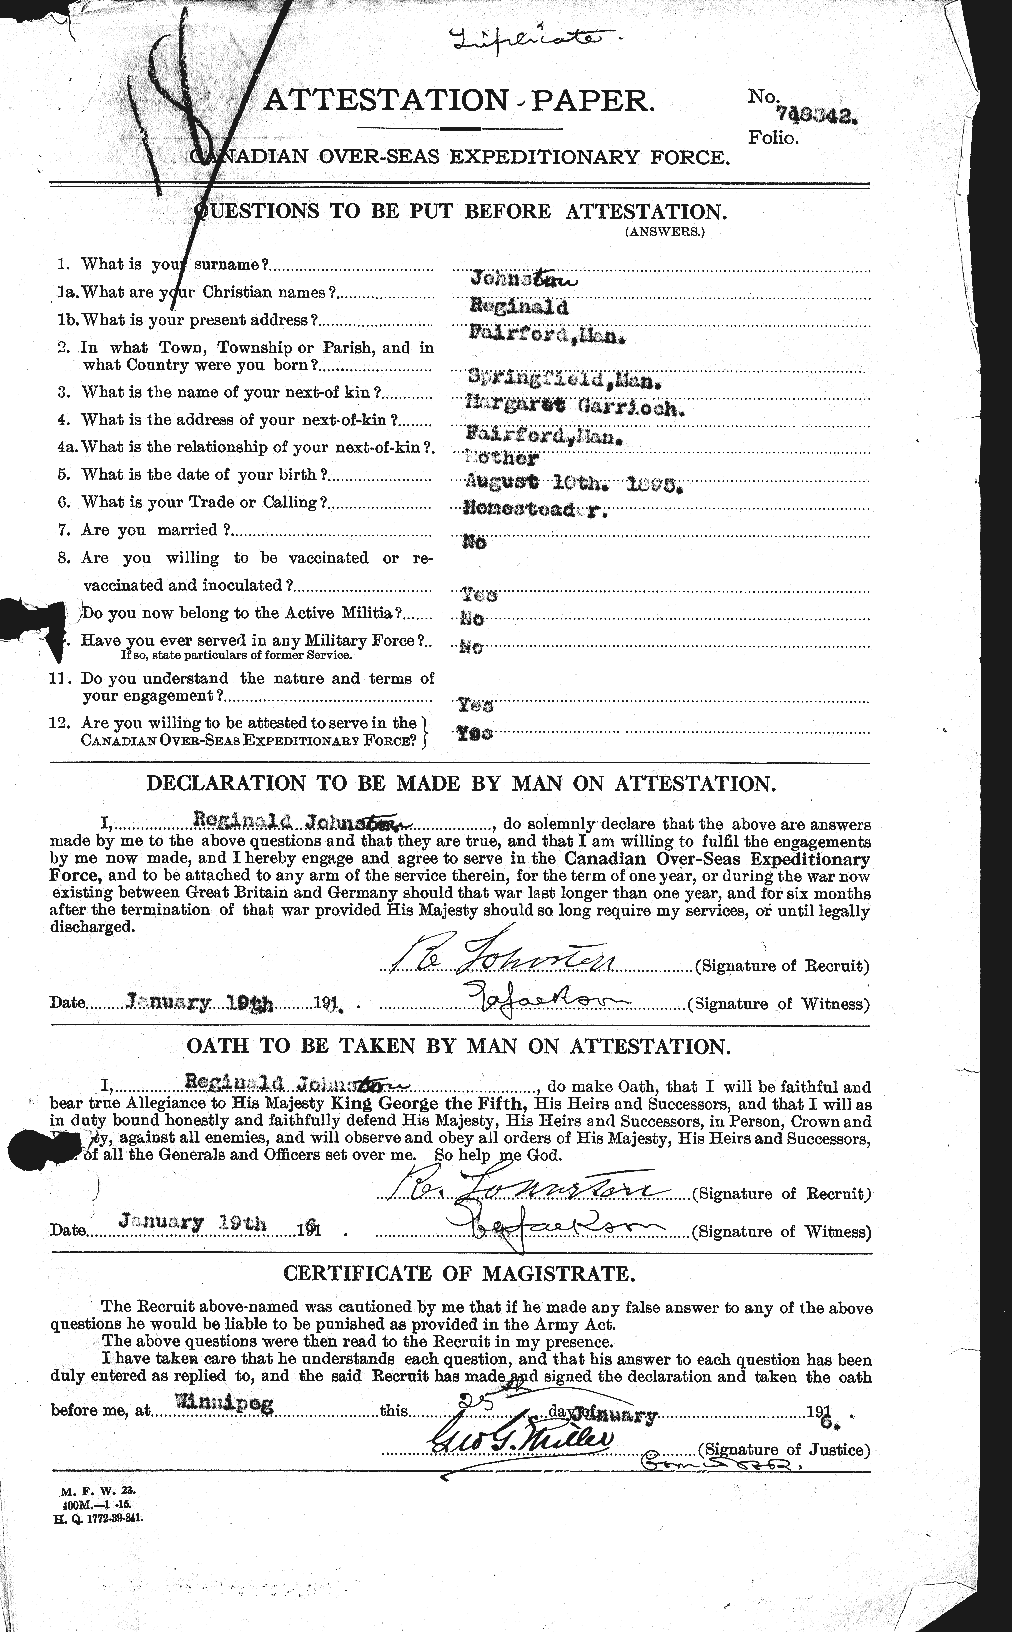 Dossiers du Personnel de la Première Guerre mondiale - CEC 423058a